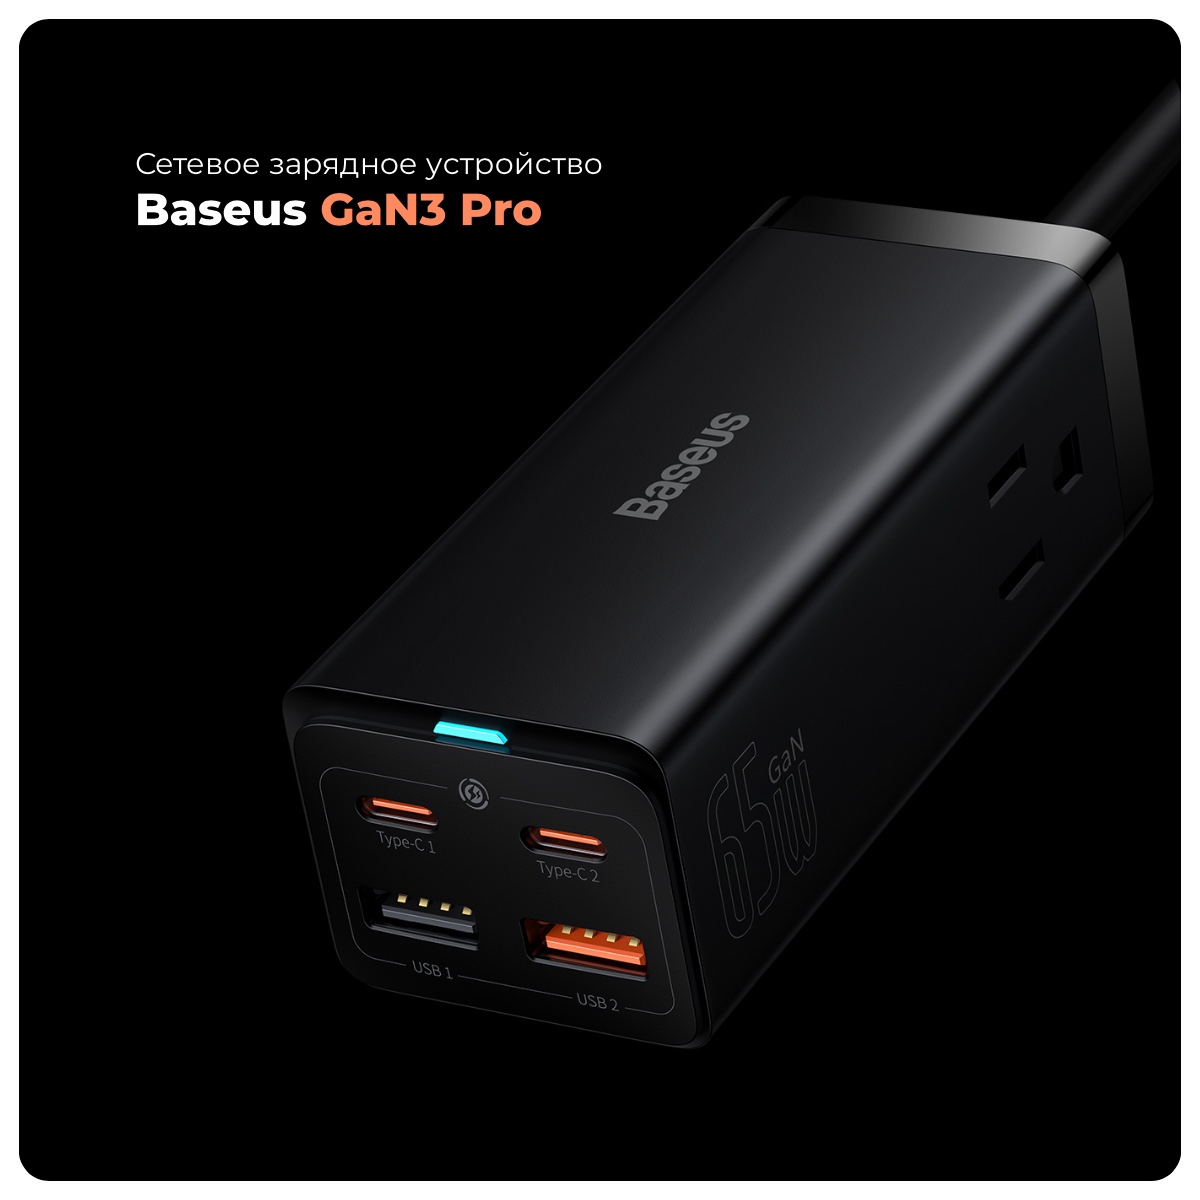 Baseus-GaN3-Pro-01